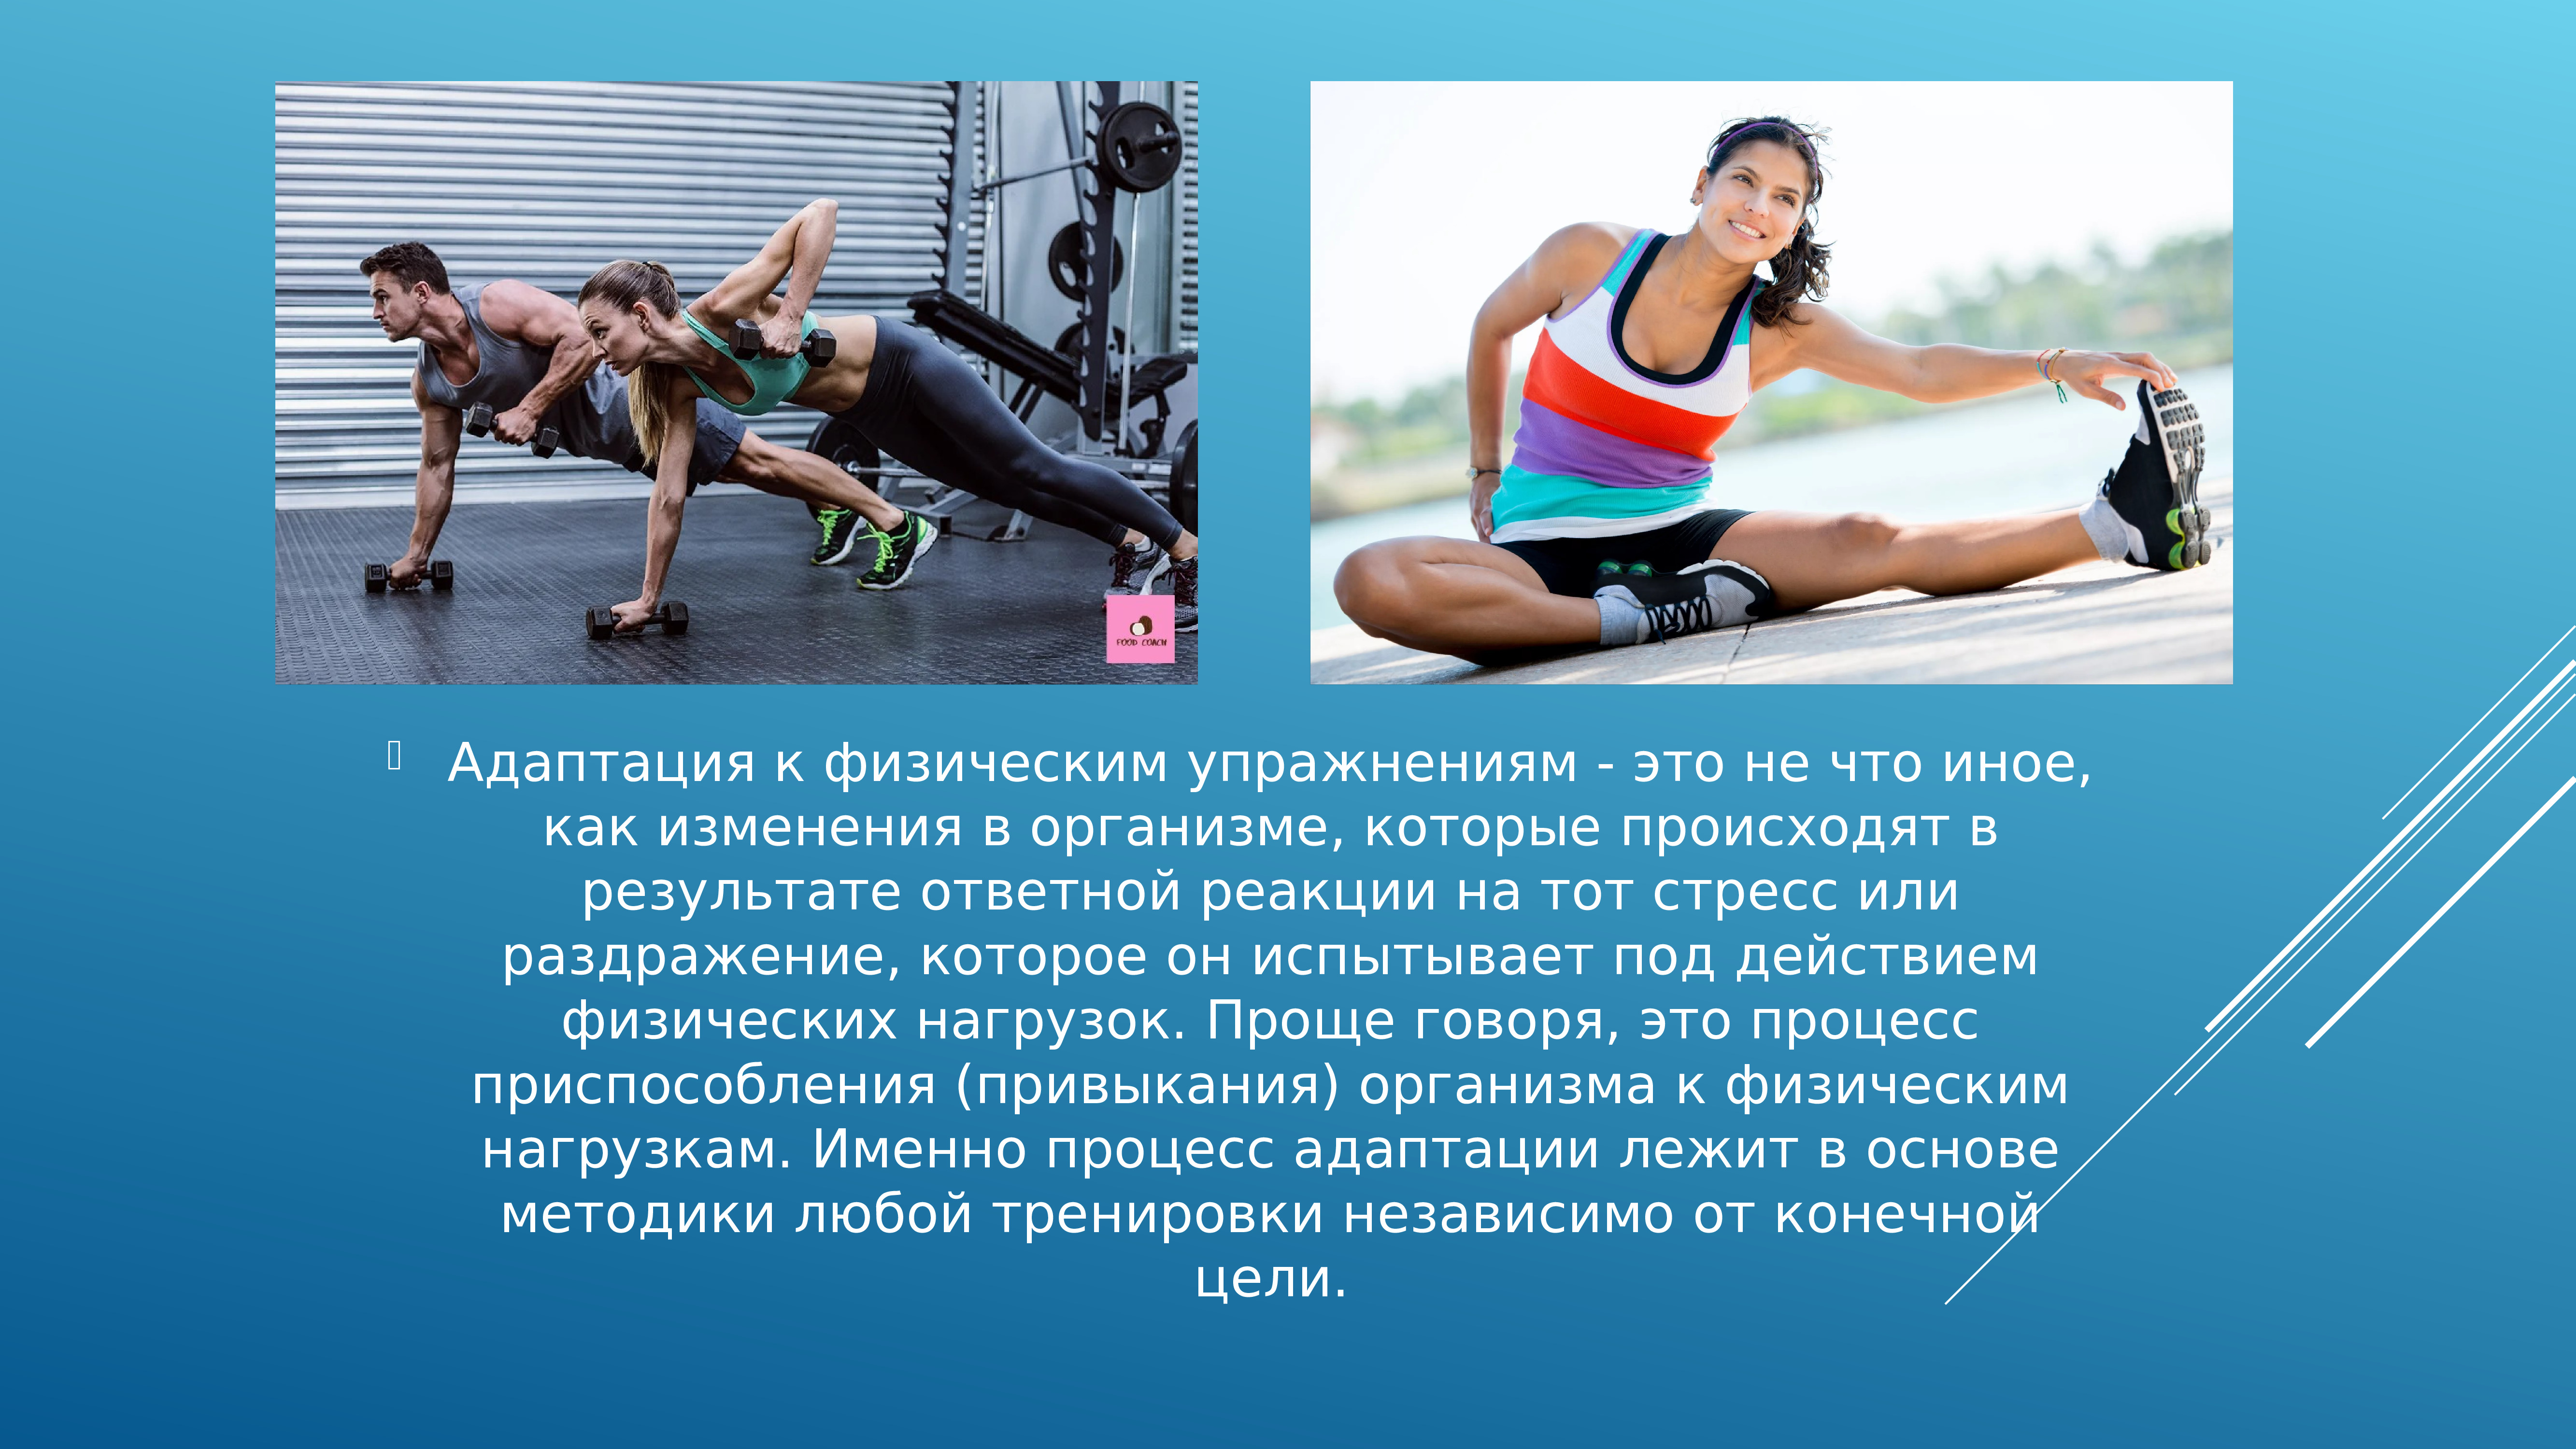 Повышение работоспособность спортсмена. Адаптация к физическим нагрузкам. Адаптация организма к физическим упражнениям. Физические нагрузки. Механизм адаптации к физическим упражнениям.